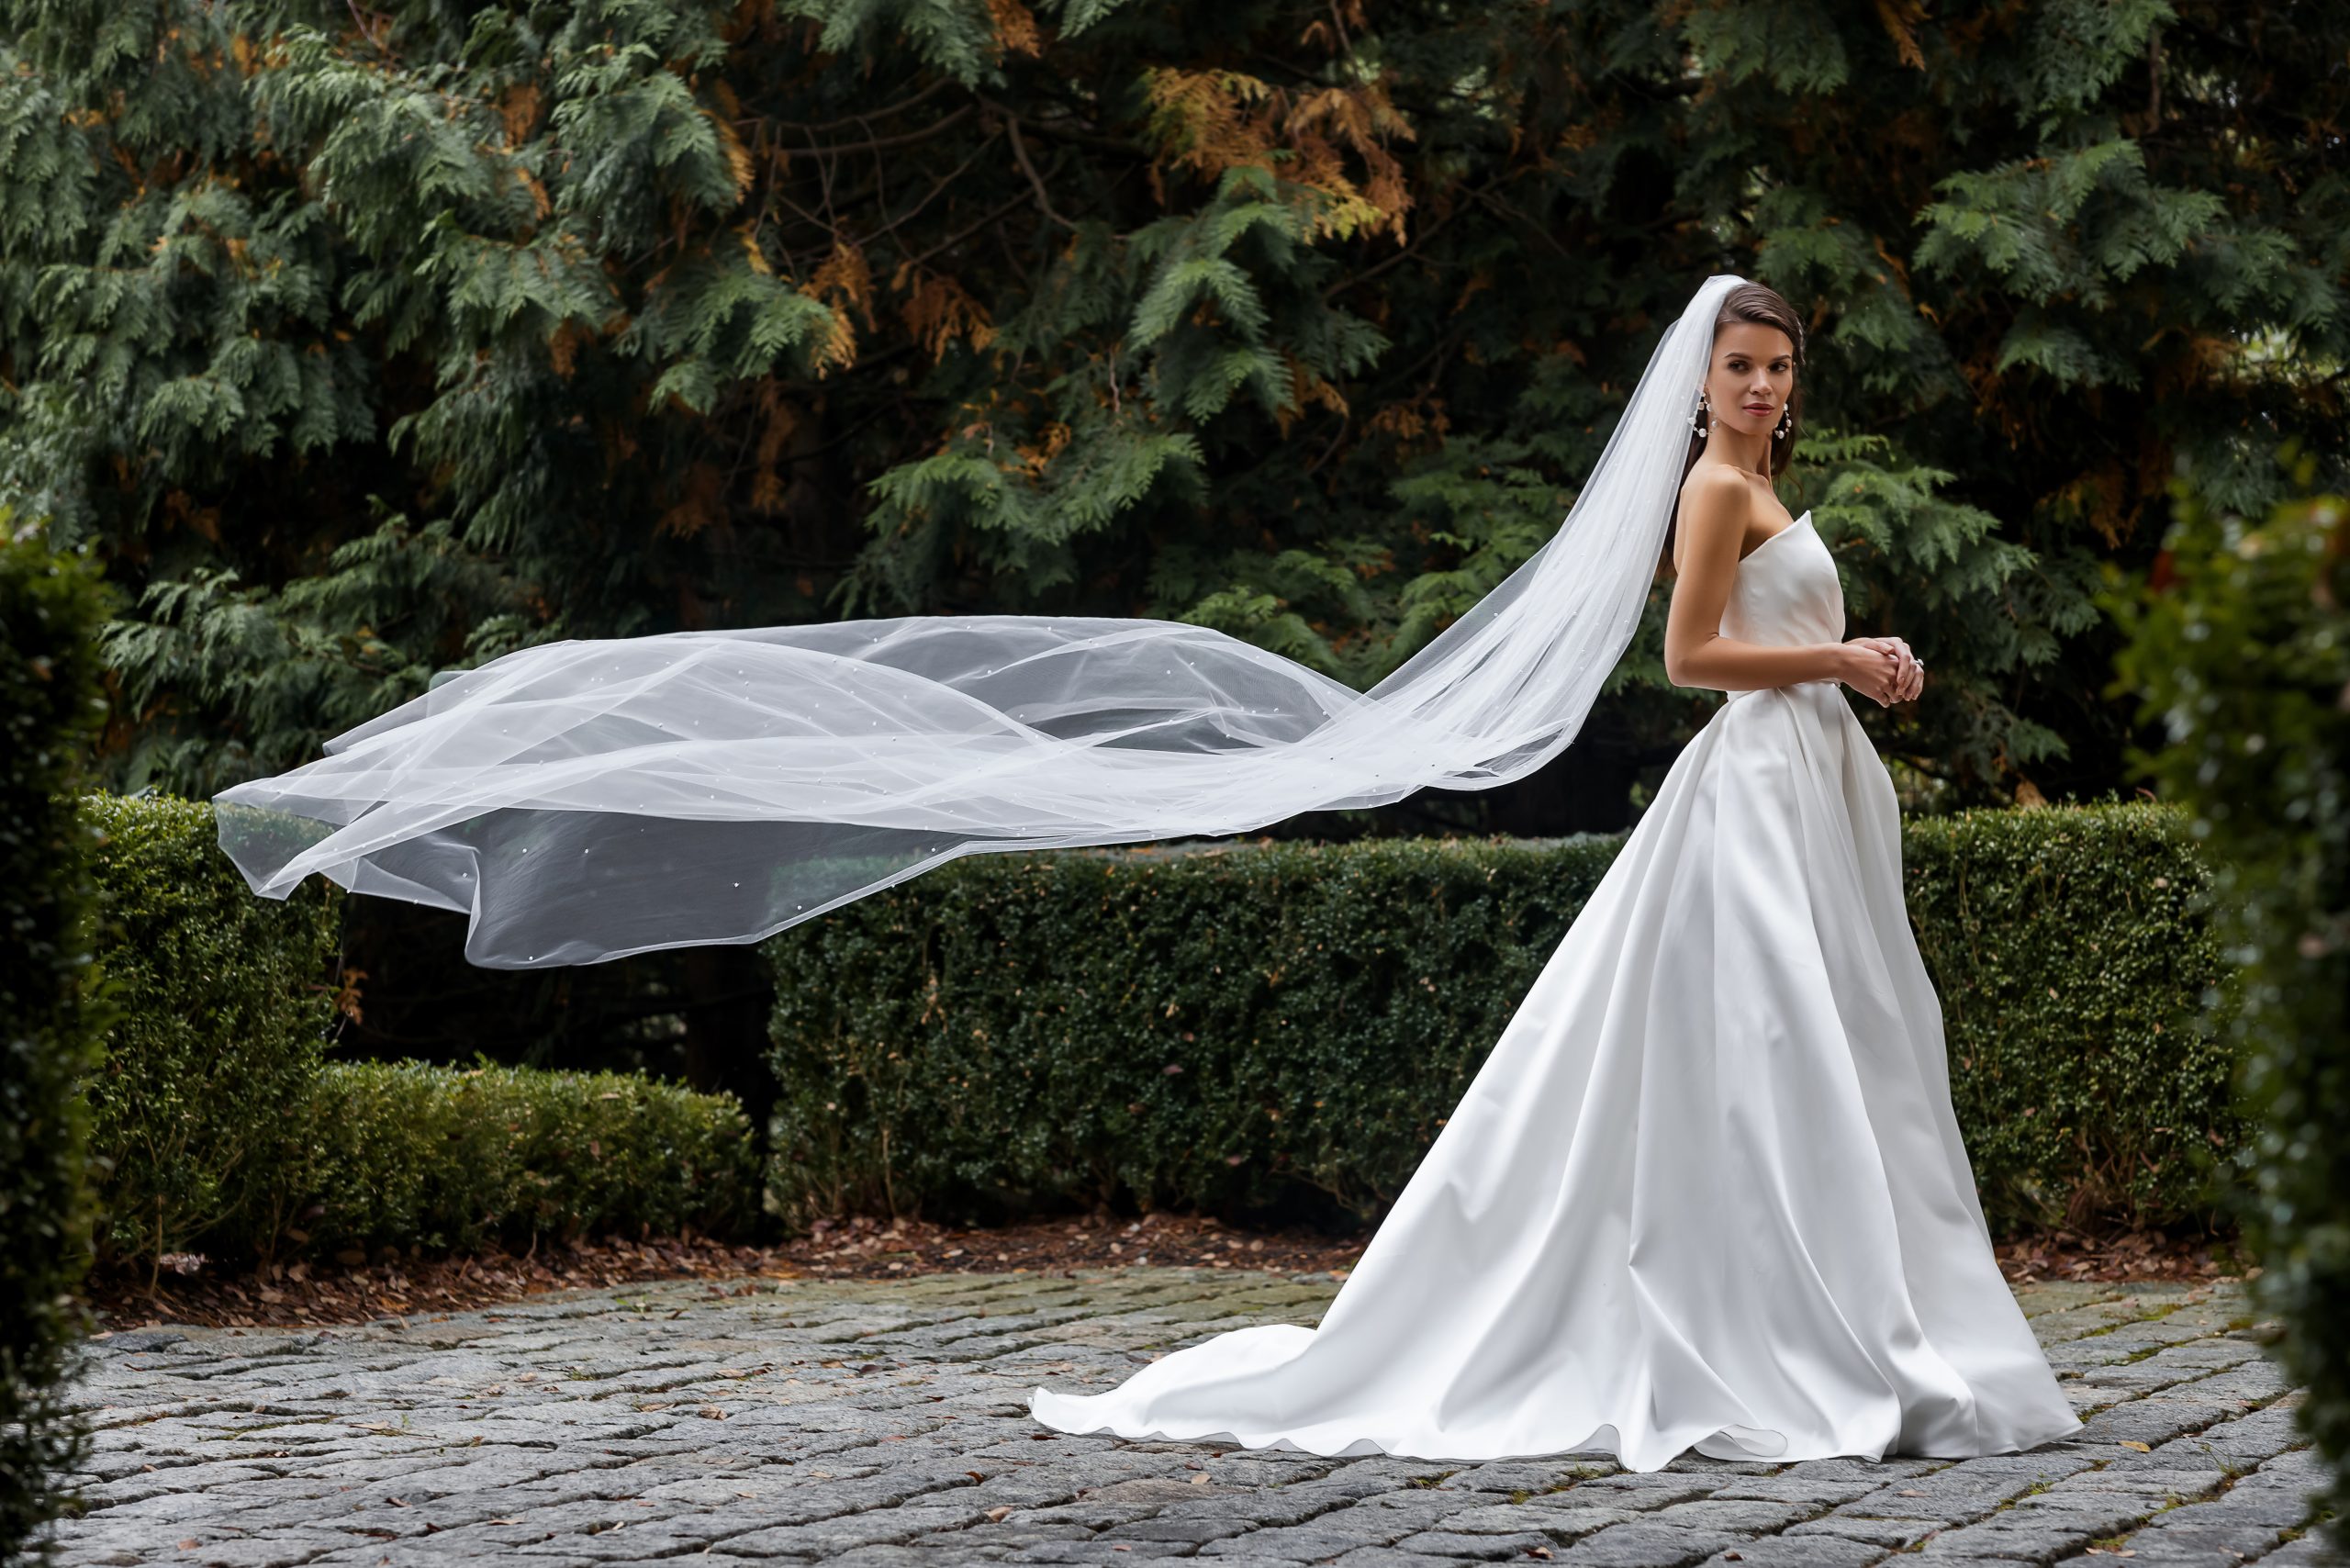 Every Bride's Head-to-Toe Bridal Accessory Checklist